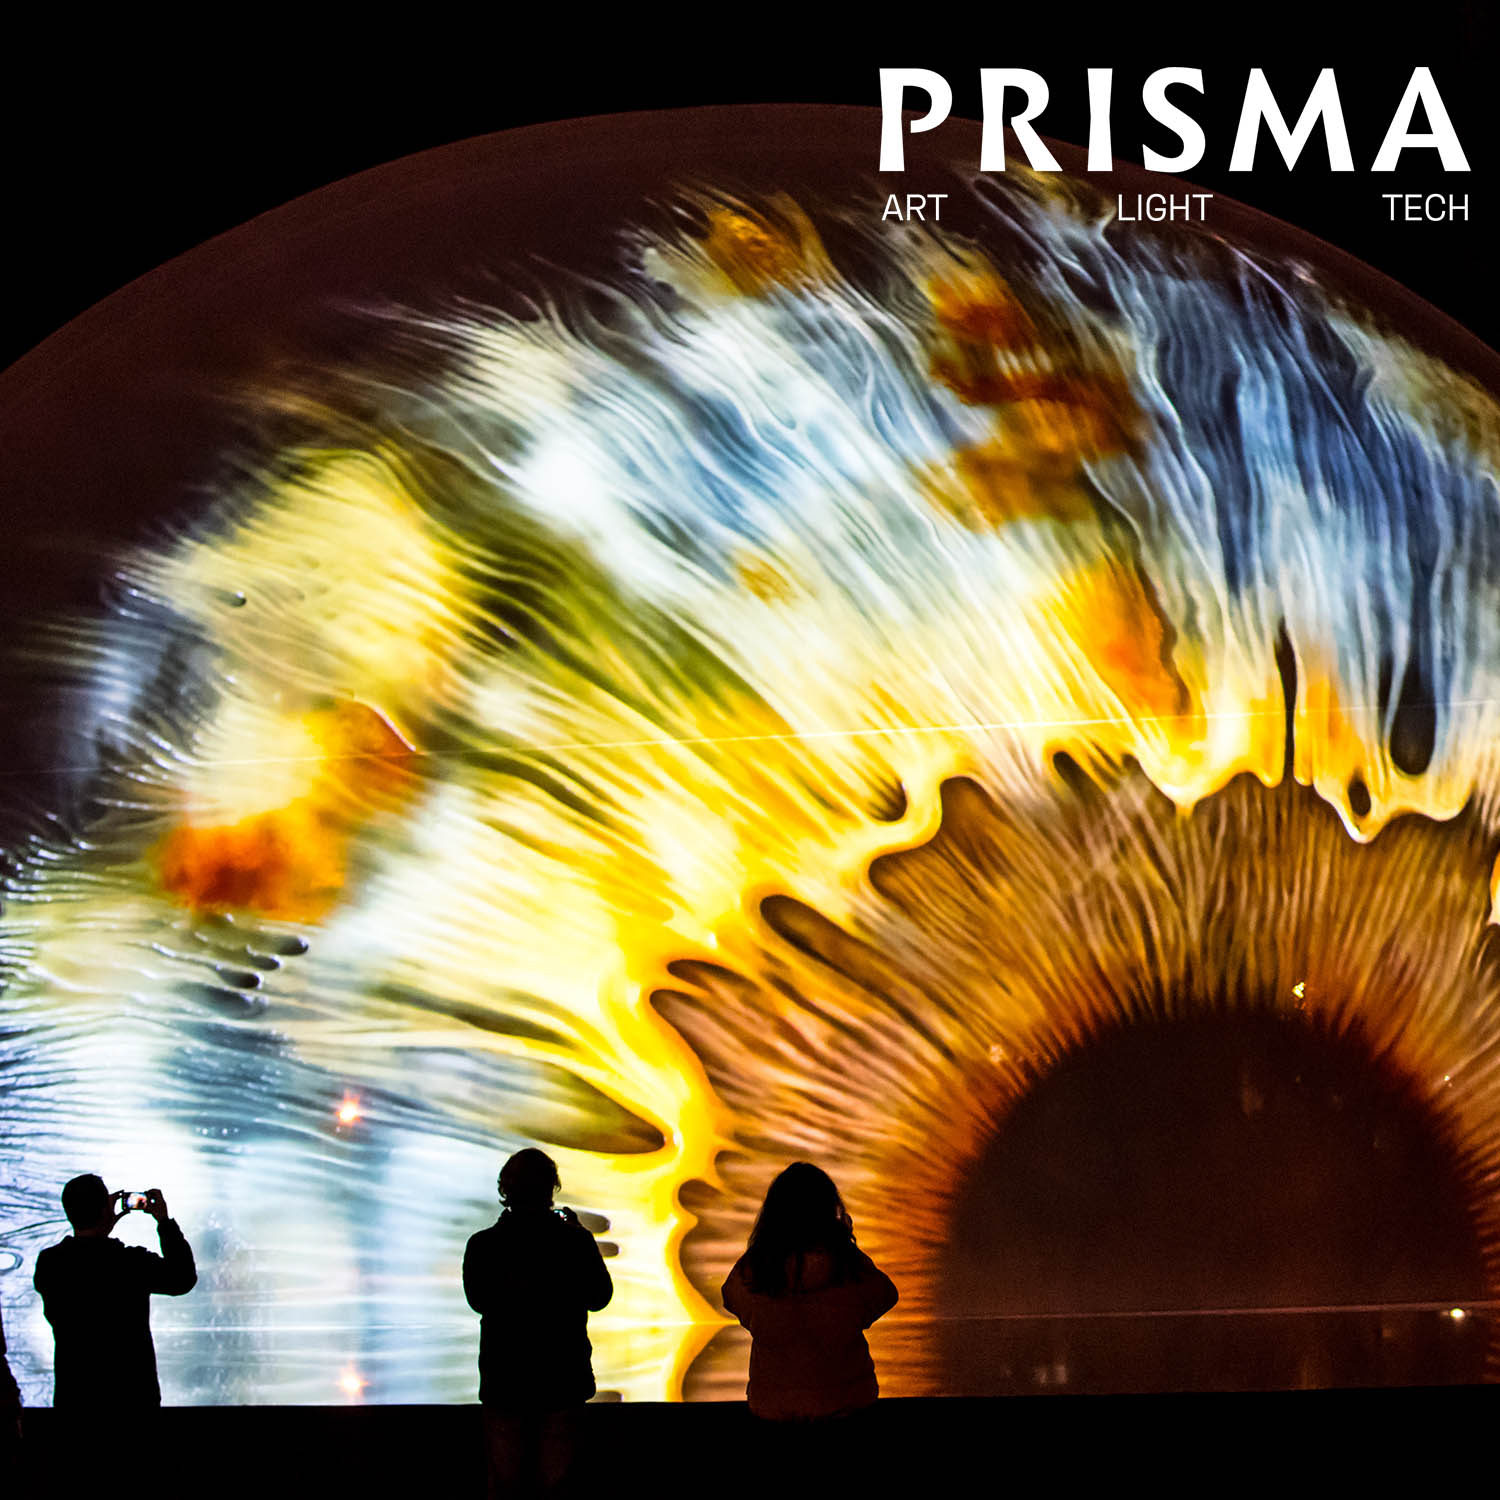 Prisma / Art Light Tech